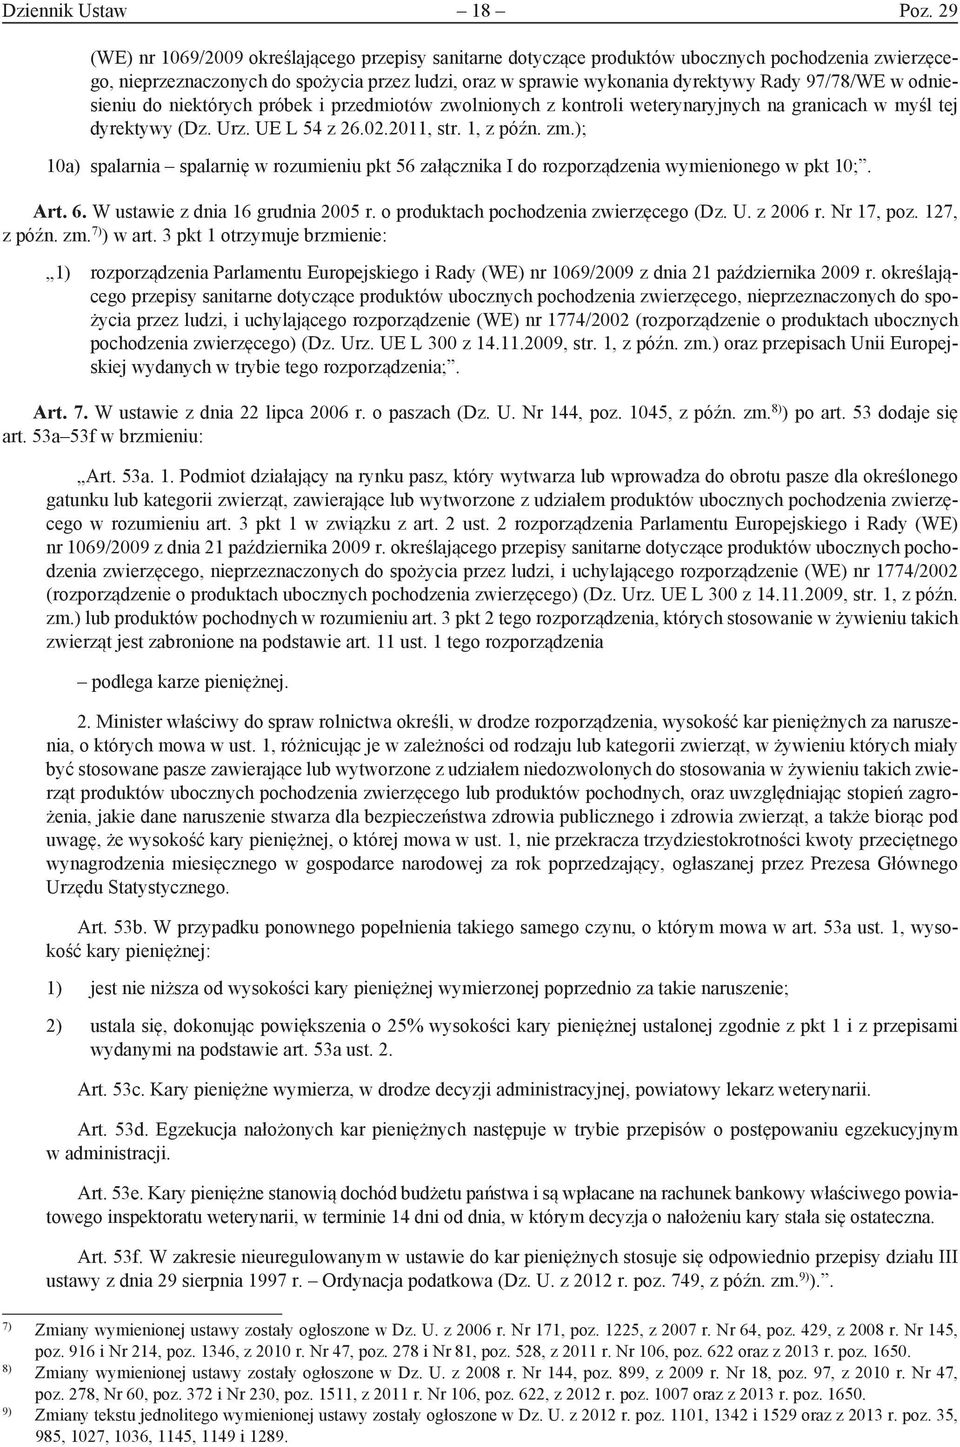 97/78/WE w odniesieniu do niektórych próbek i przedmiotów zwolnionych z kontroli weterynaryjnych na granicach w myśl tej dyrektywy (Dz. Urz. UE L 54 z 26.02.2011, str. 1, z późn. zm.